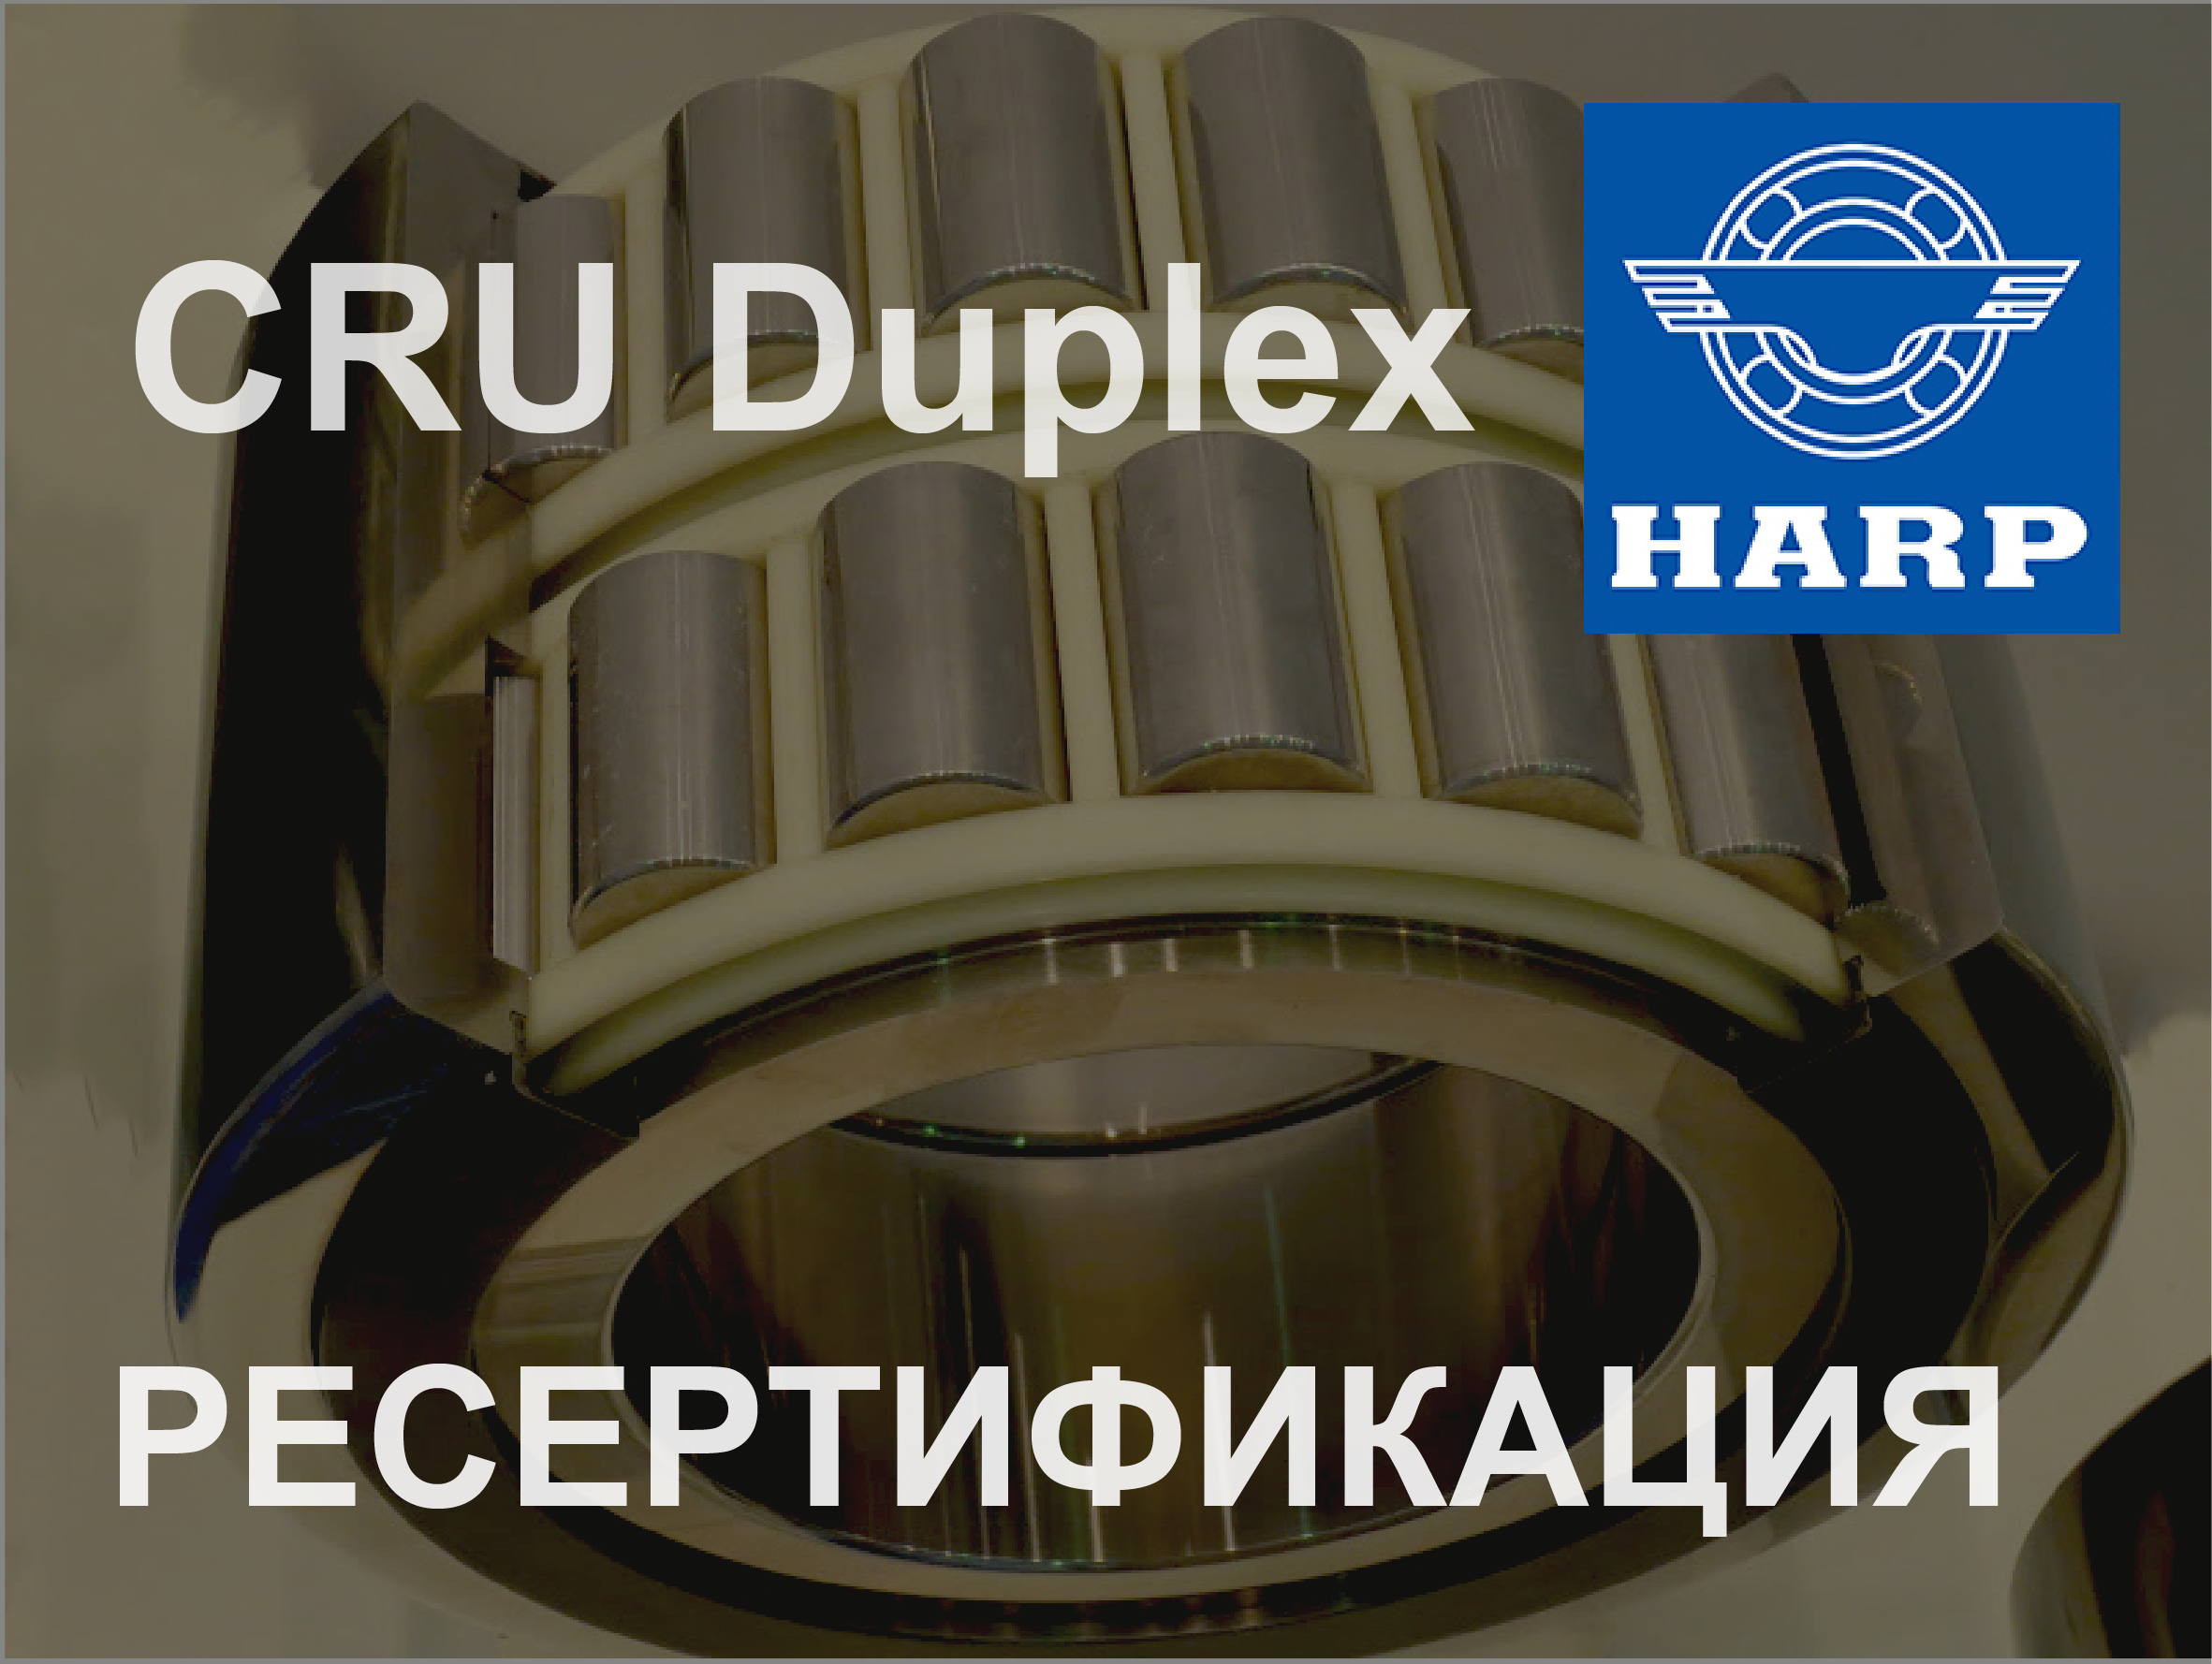 HARP успішно пройшов ресертифікацію здвоєного підшипника CRU Duplex